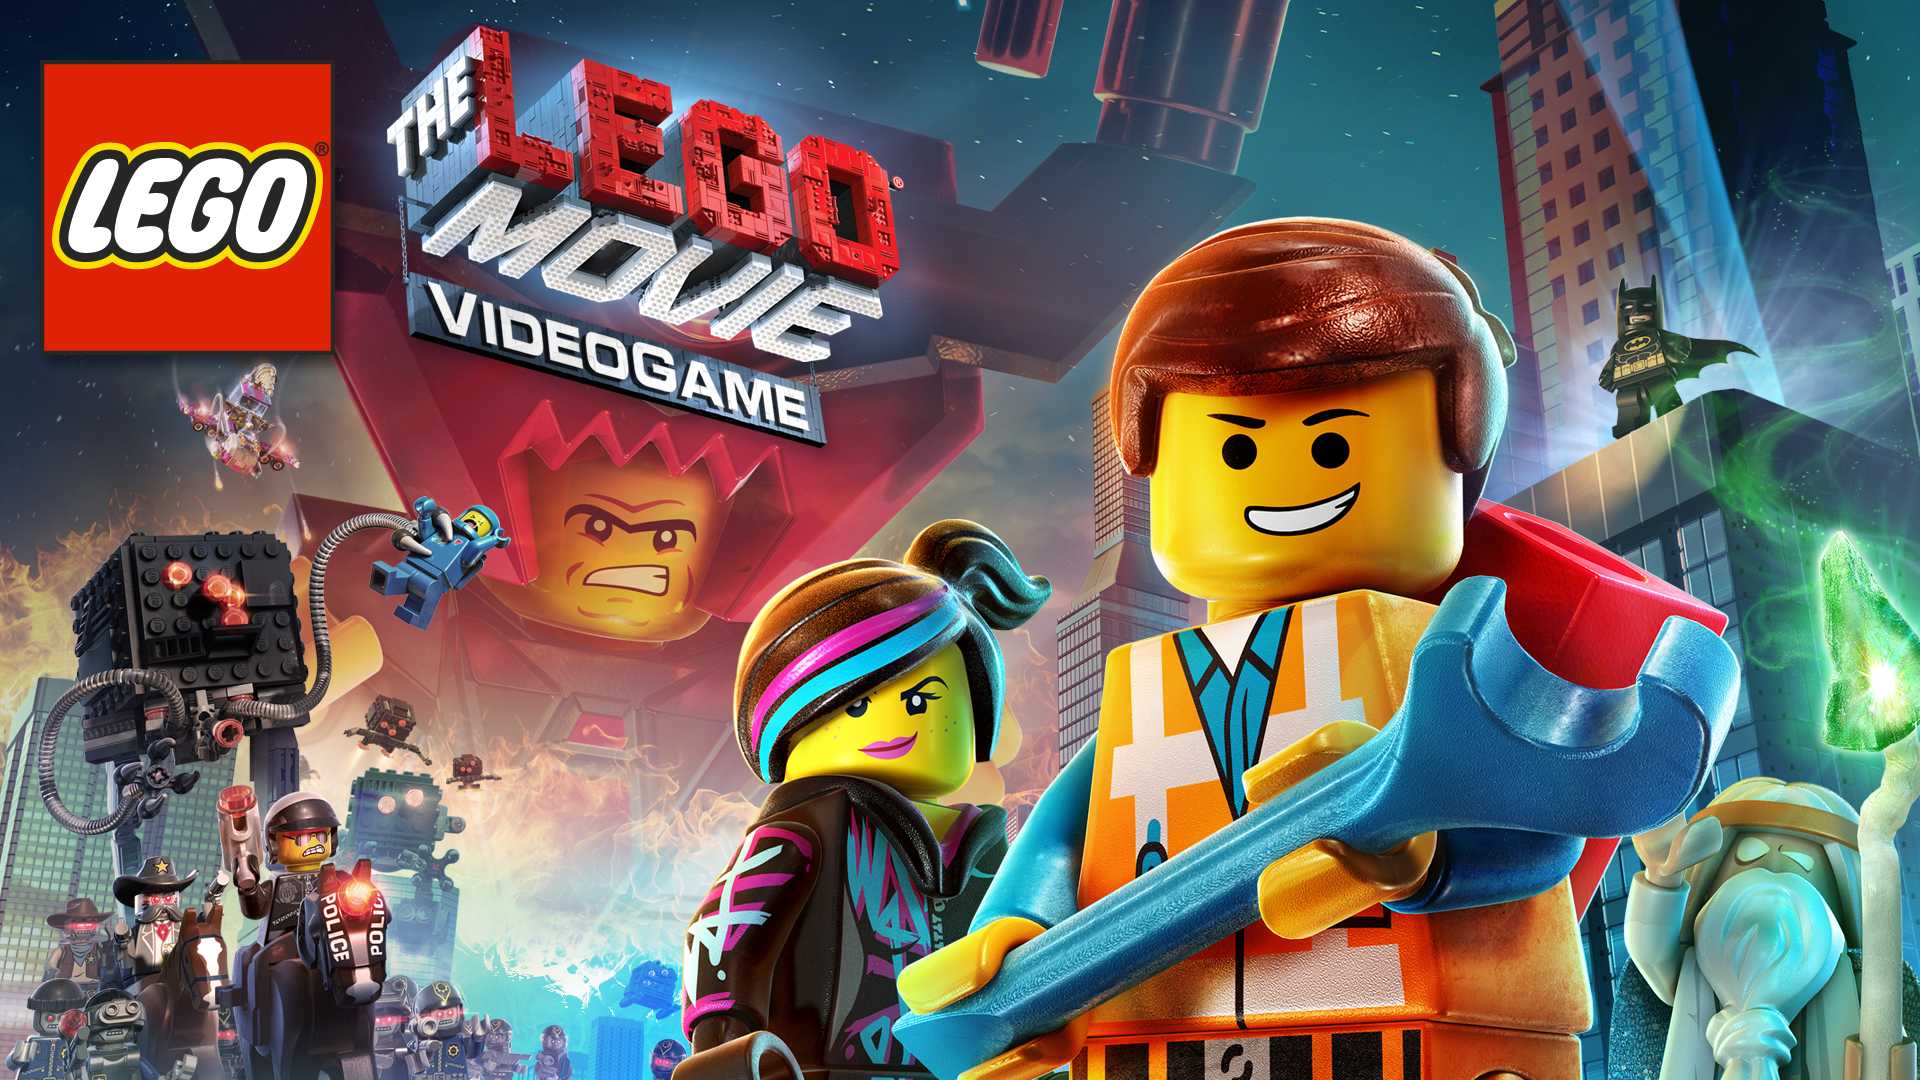 The LEGO Movie Videogame [STEAM KEY]